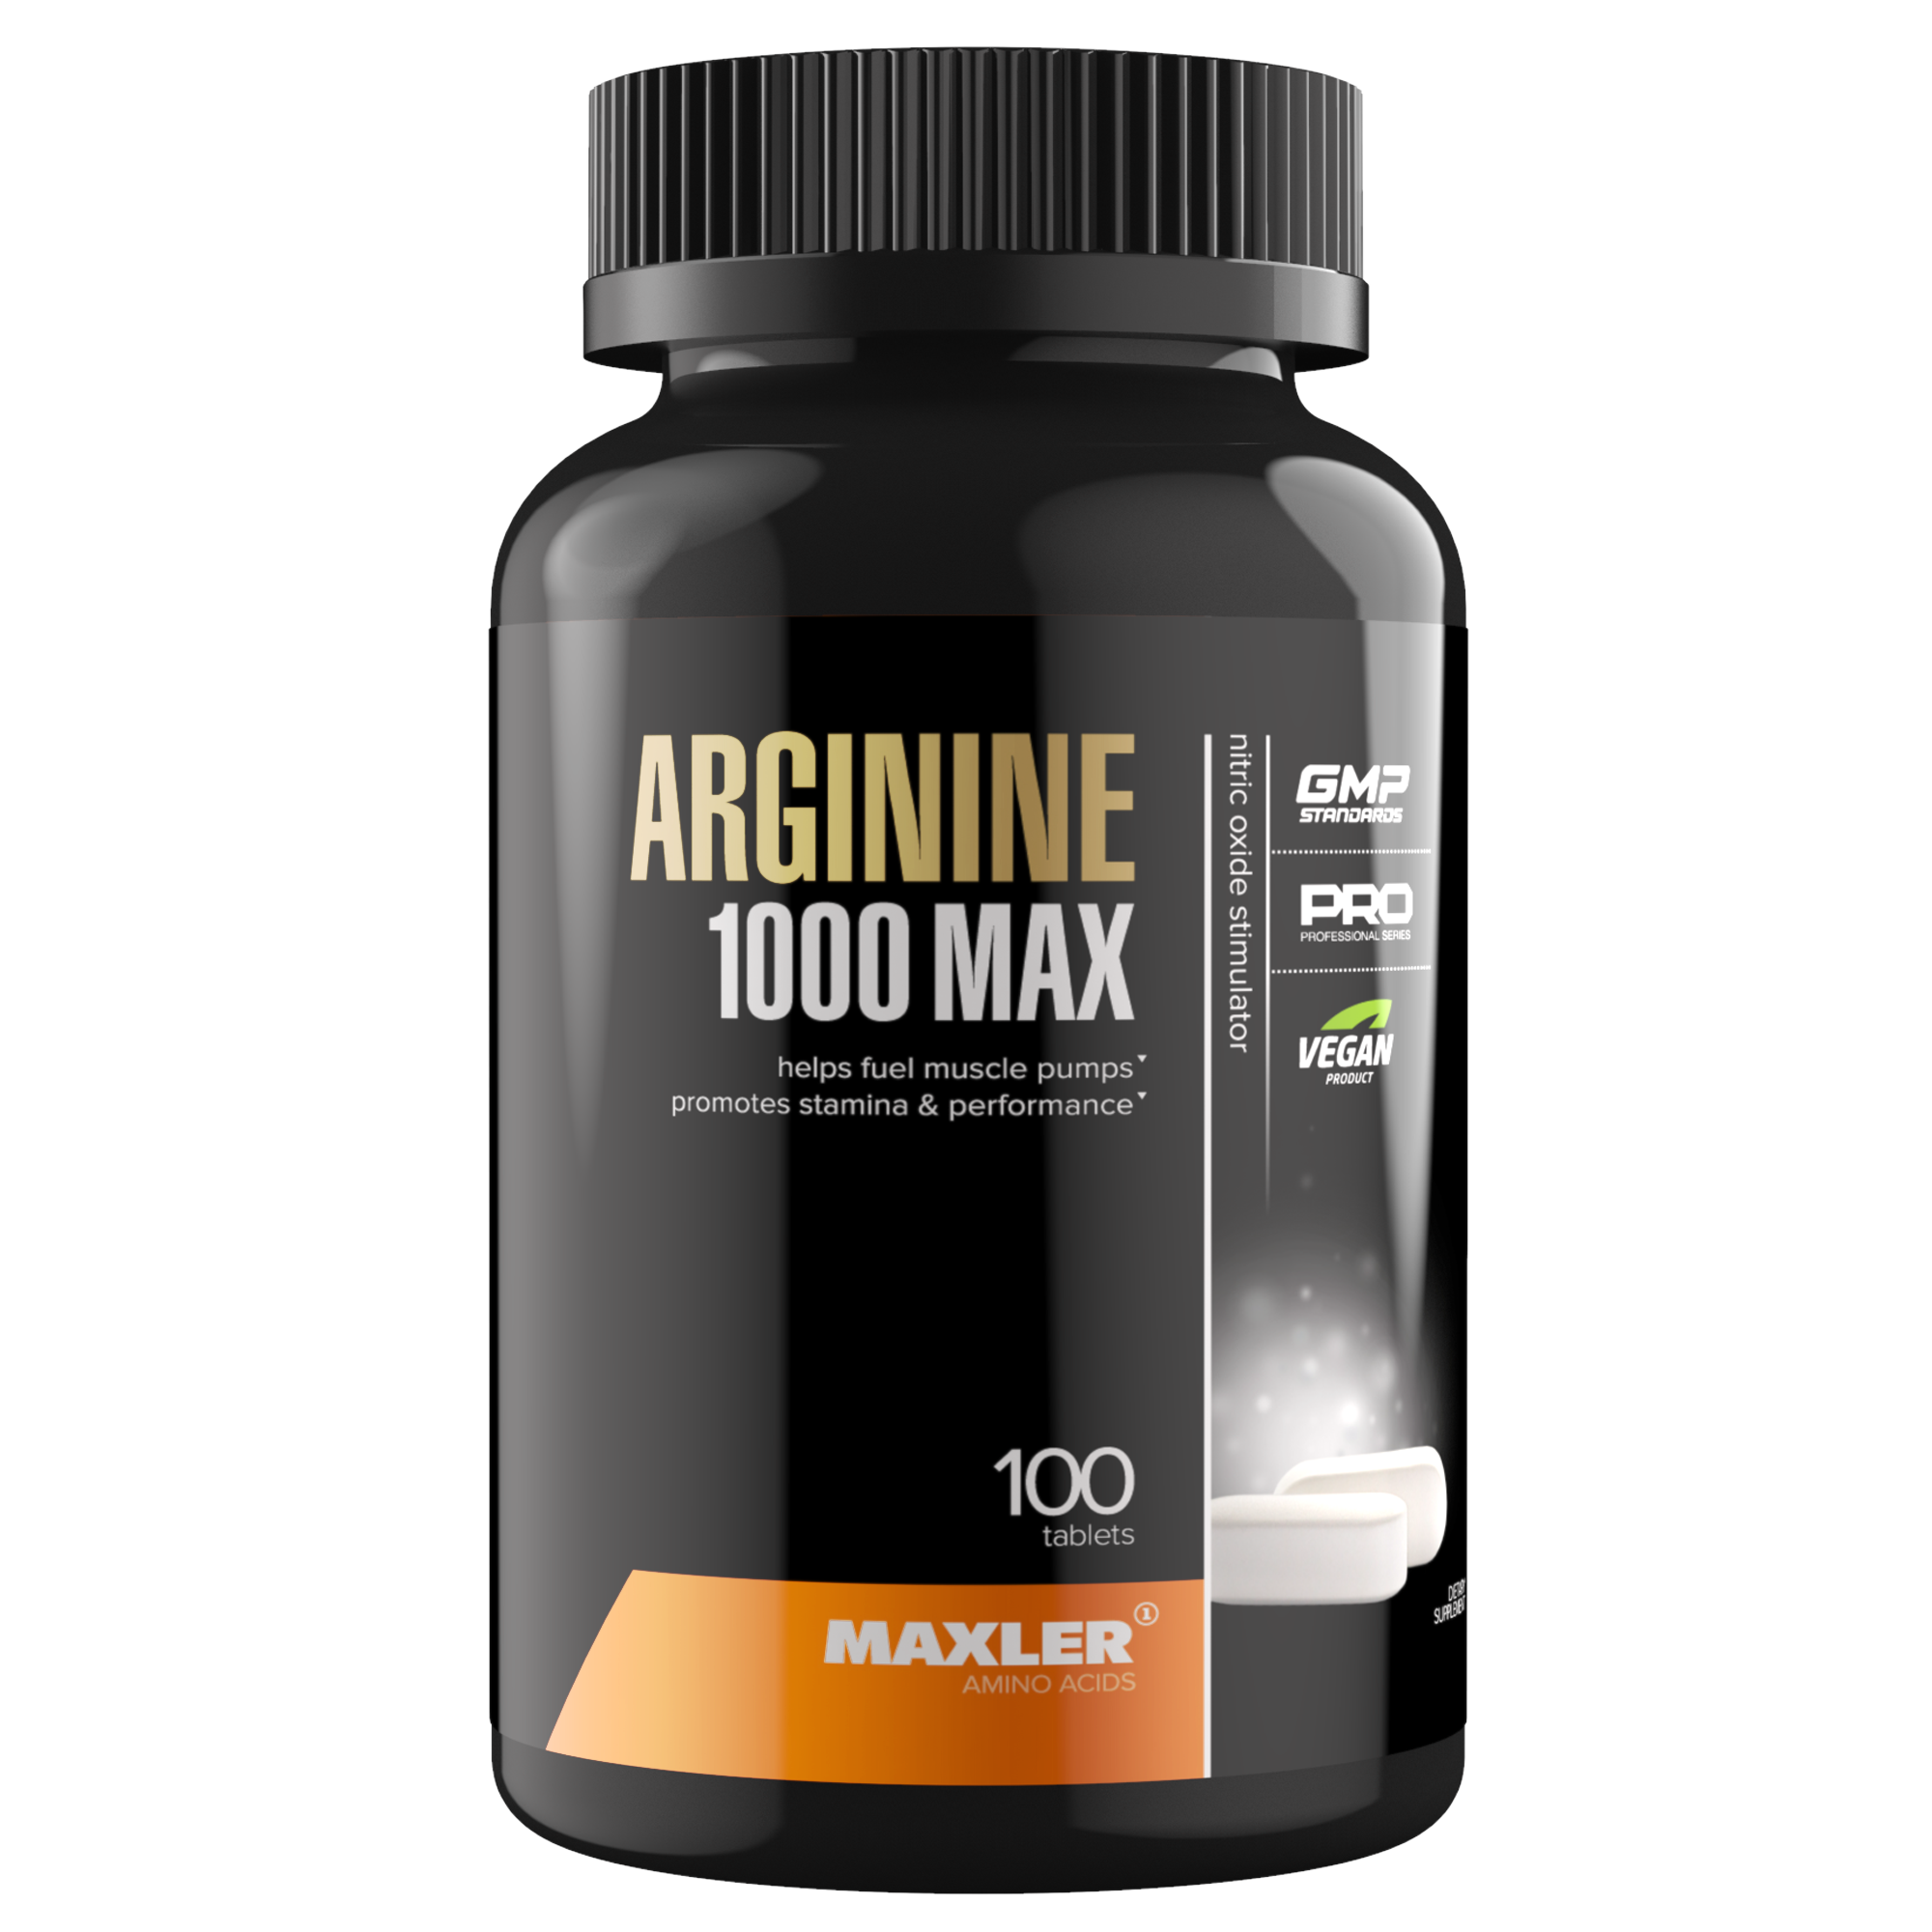 Arginine 1000 Max Maxler, 100 таблеток - купить в Москве, цены на Мегамаркет | 100023929628